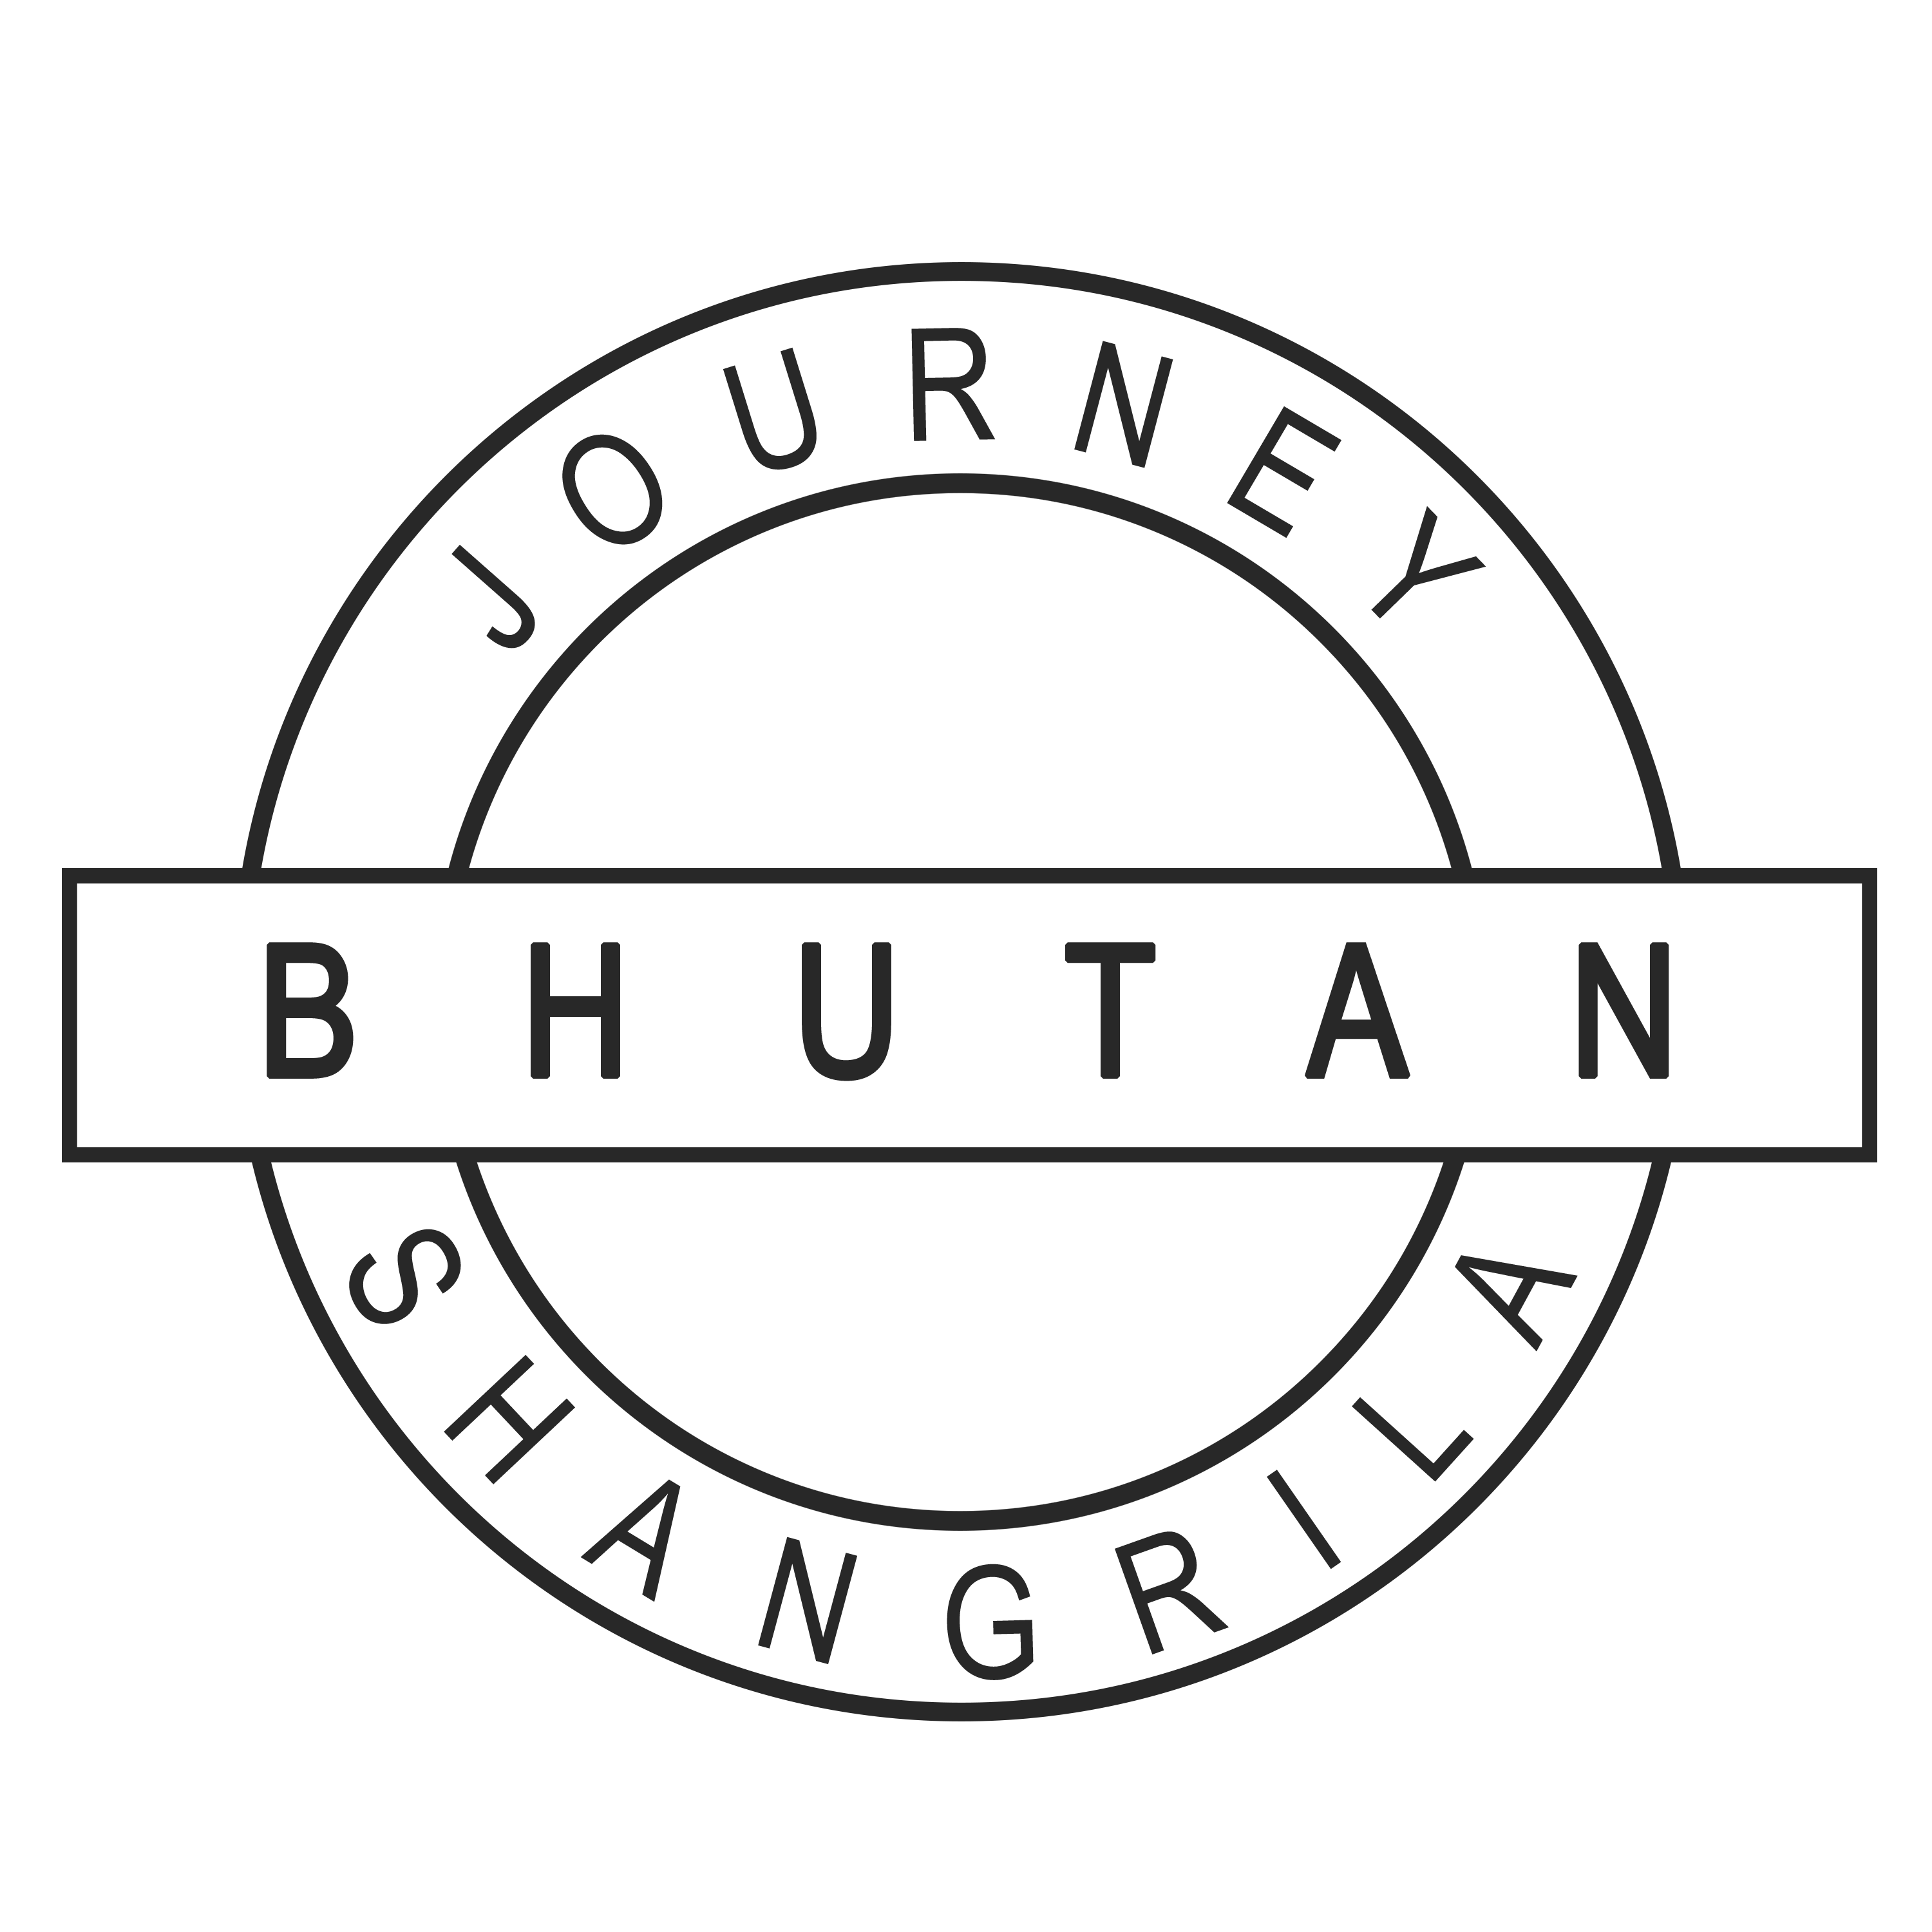 Bhutan Panoramic – 13 Nights / 14 days